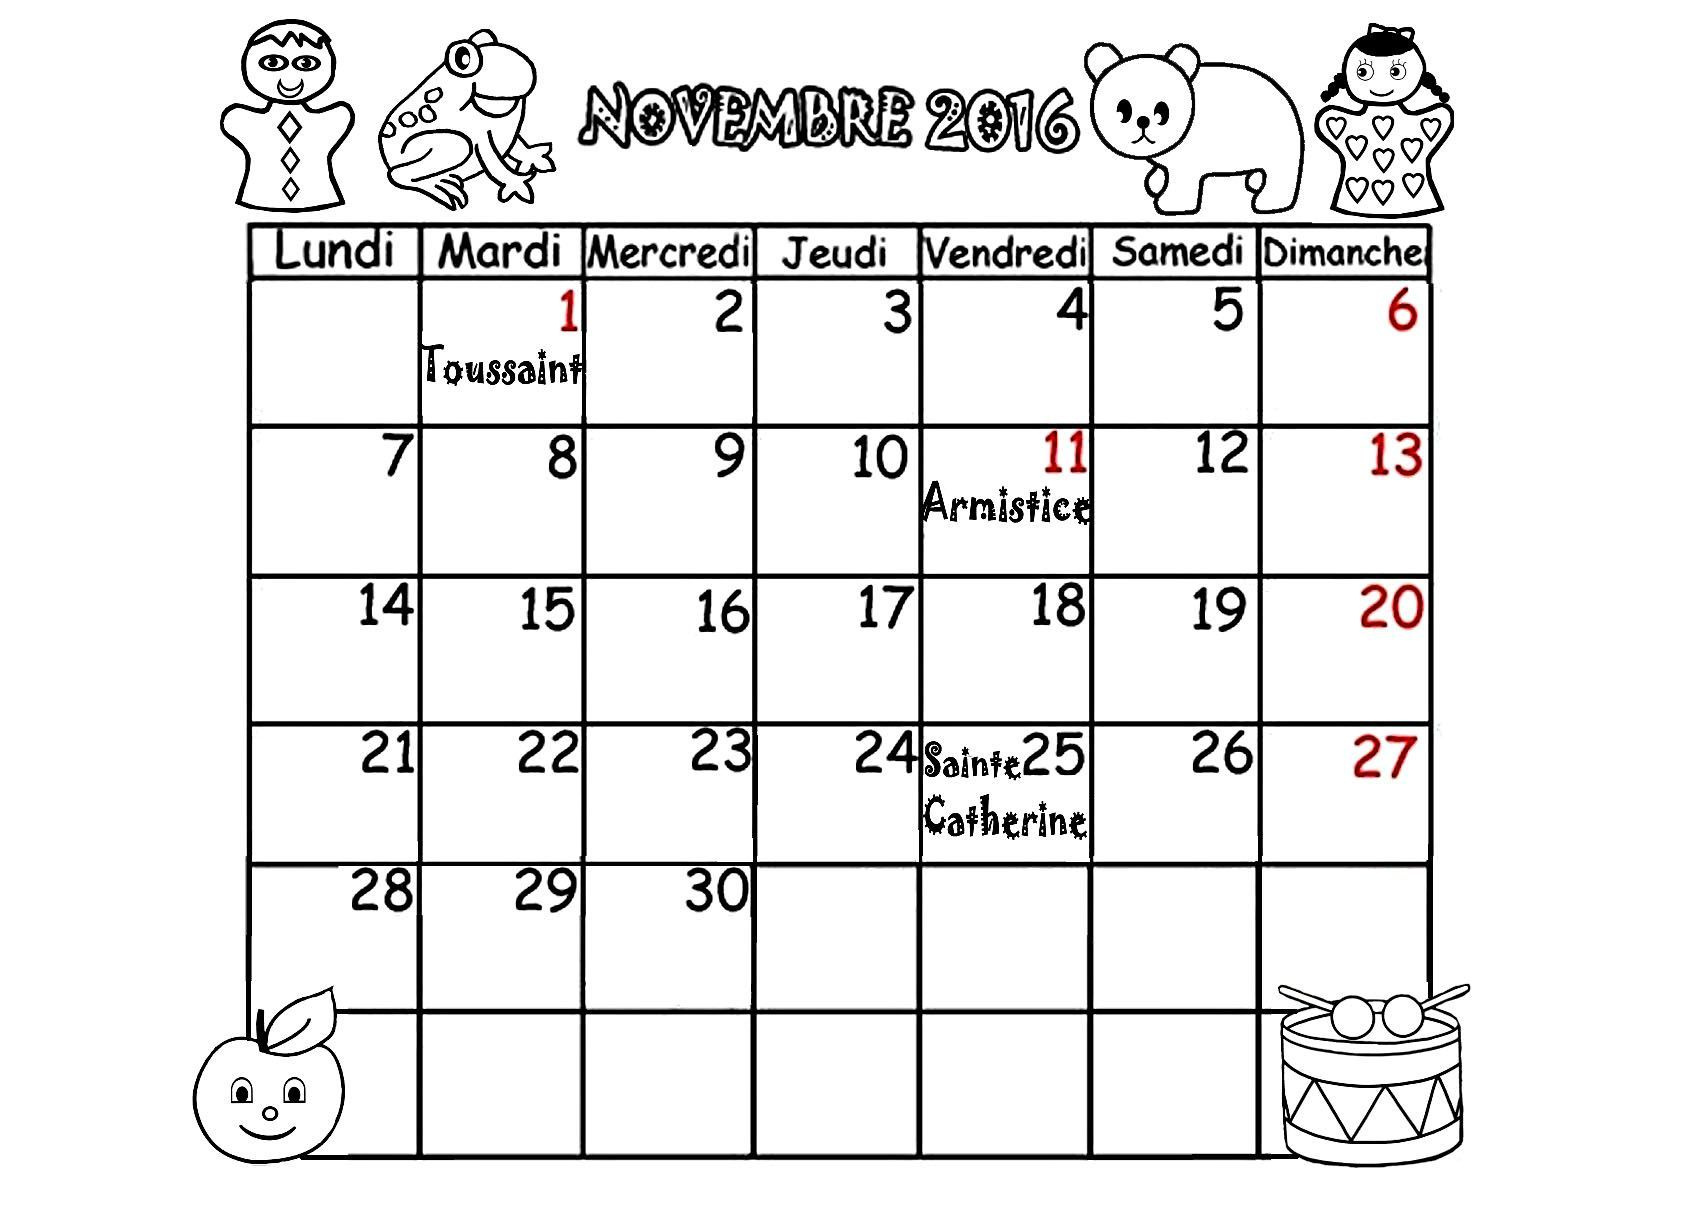 4144 calendrier 2016 mois septembre octobre novembre decembre